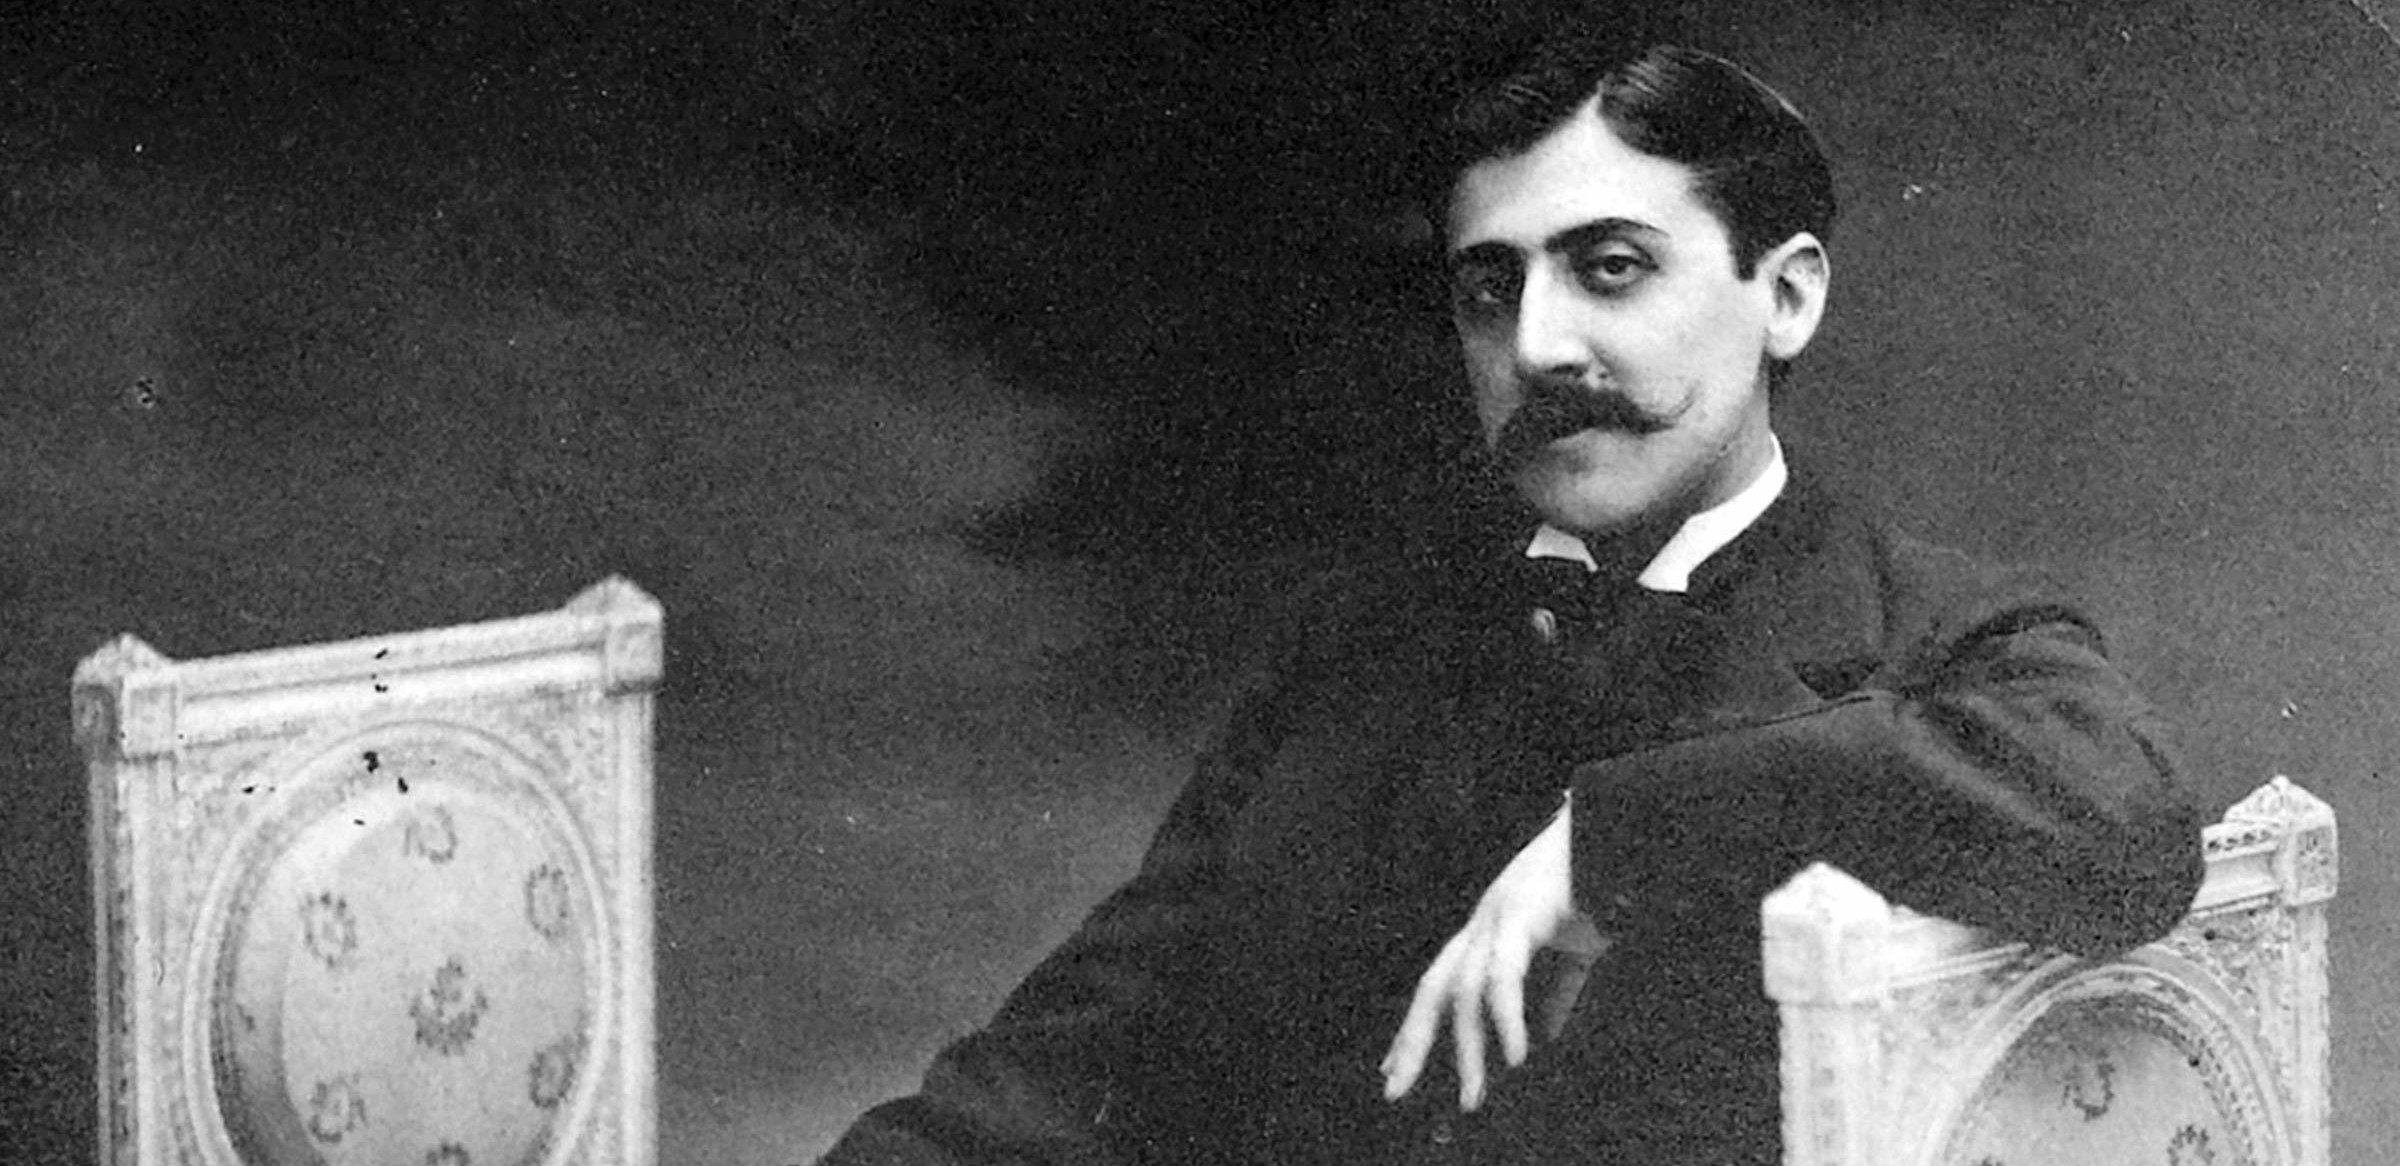 Monsieur Proust’s masterwork